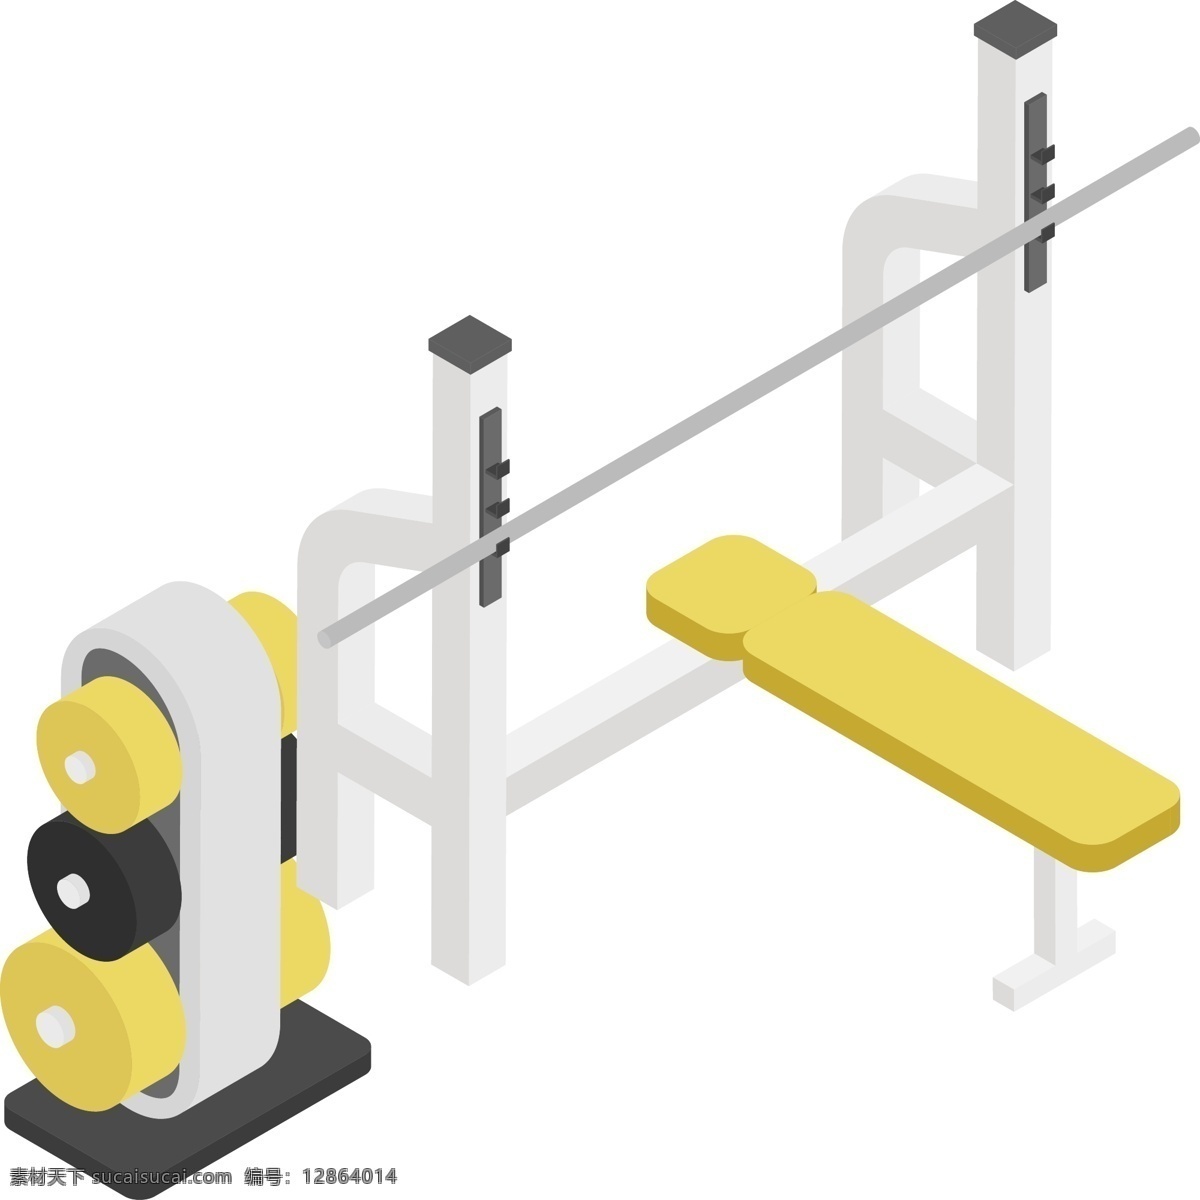 矢量 卡通 举重器 免 扣 立体2.5d 运动器材 健身器材 运动健身 简约 图标 插画 卡通矢量图